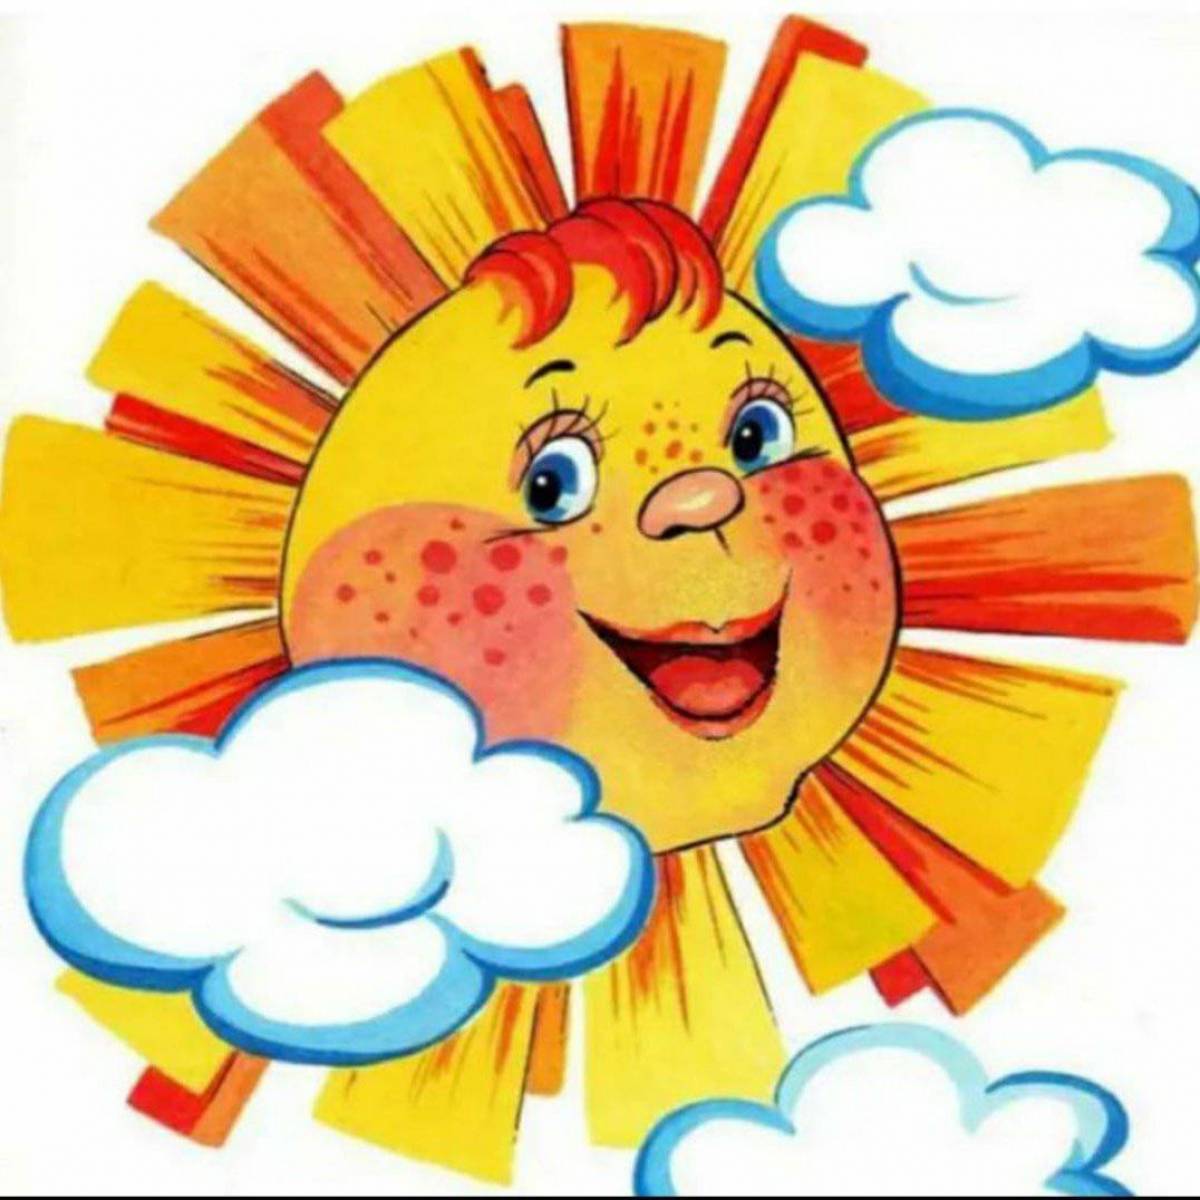 Солнце изображение рисунок. Солнышко рисунок. Солнце картинка для детей. Солнышко картинка для детей. Солнце для детей дошкольного возраста.